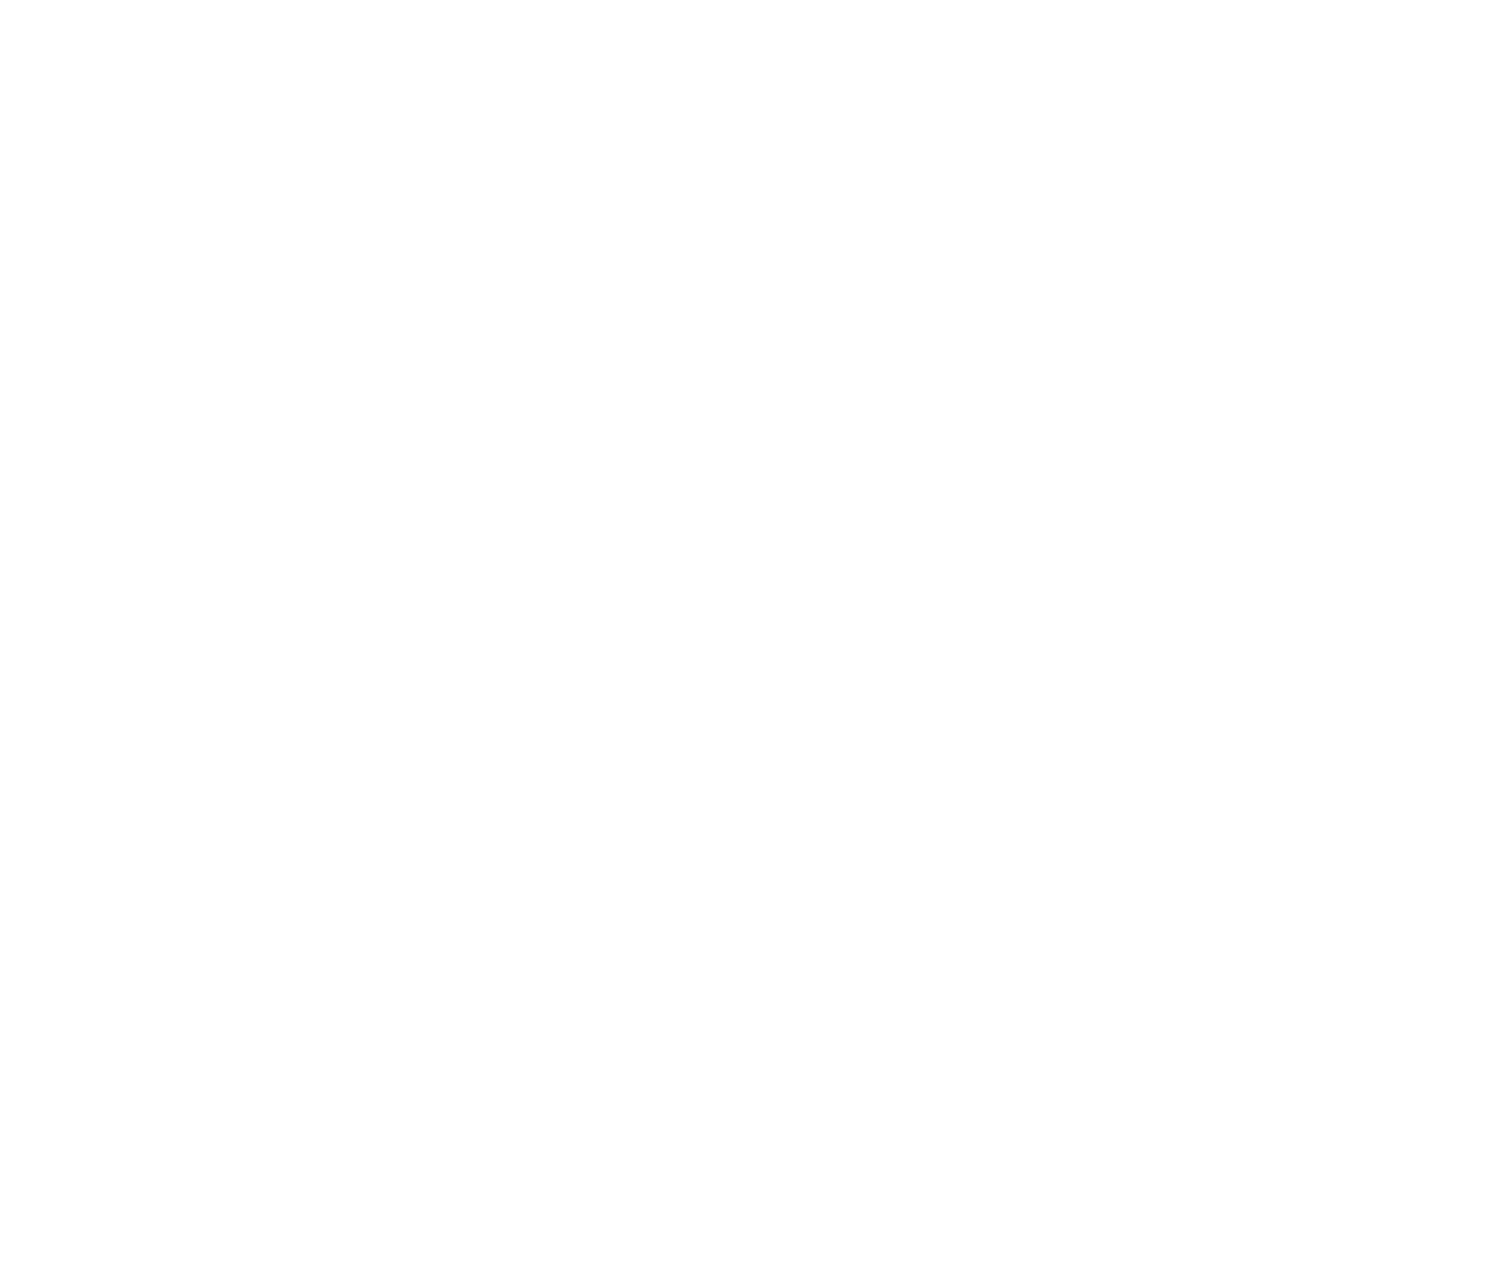 Peng Tea Group